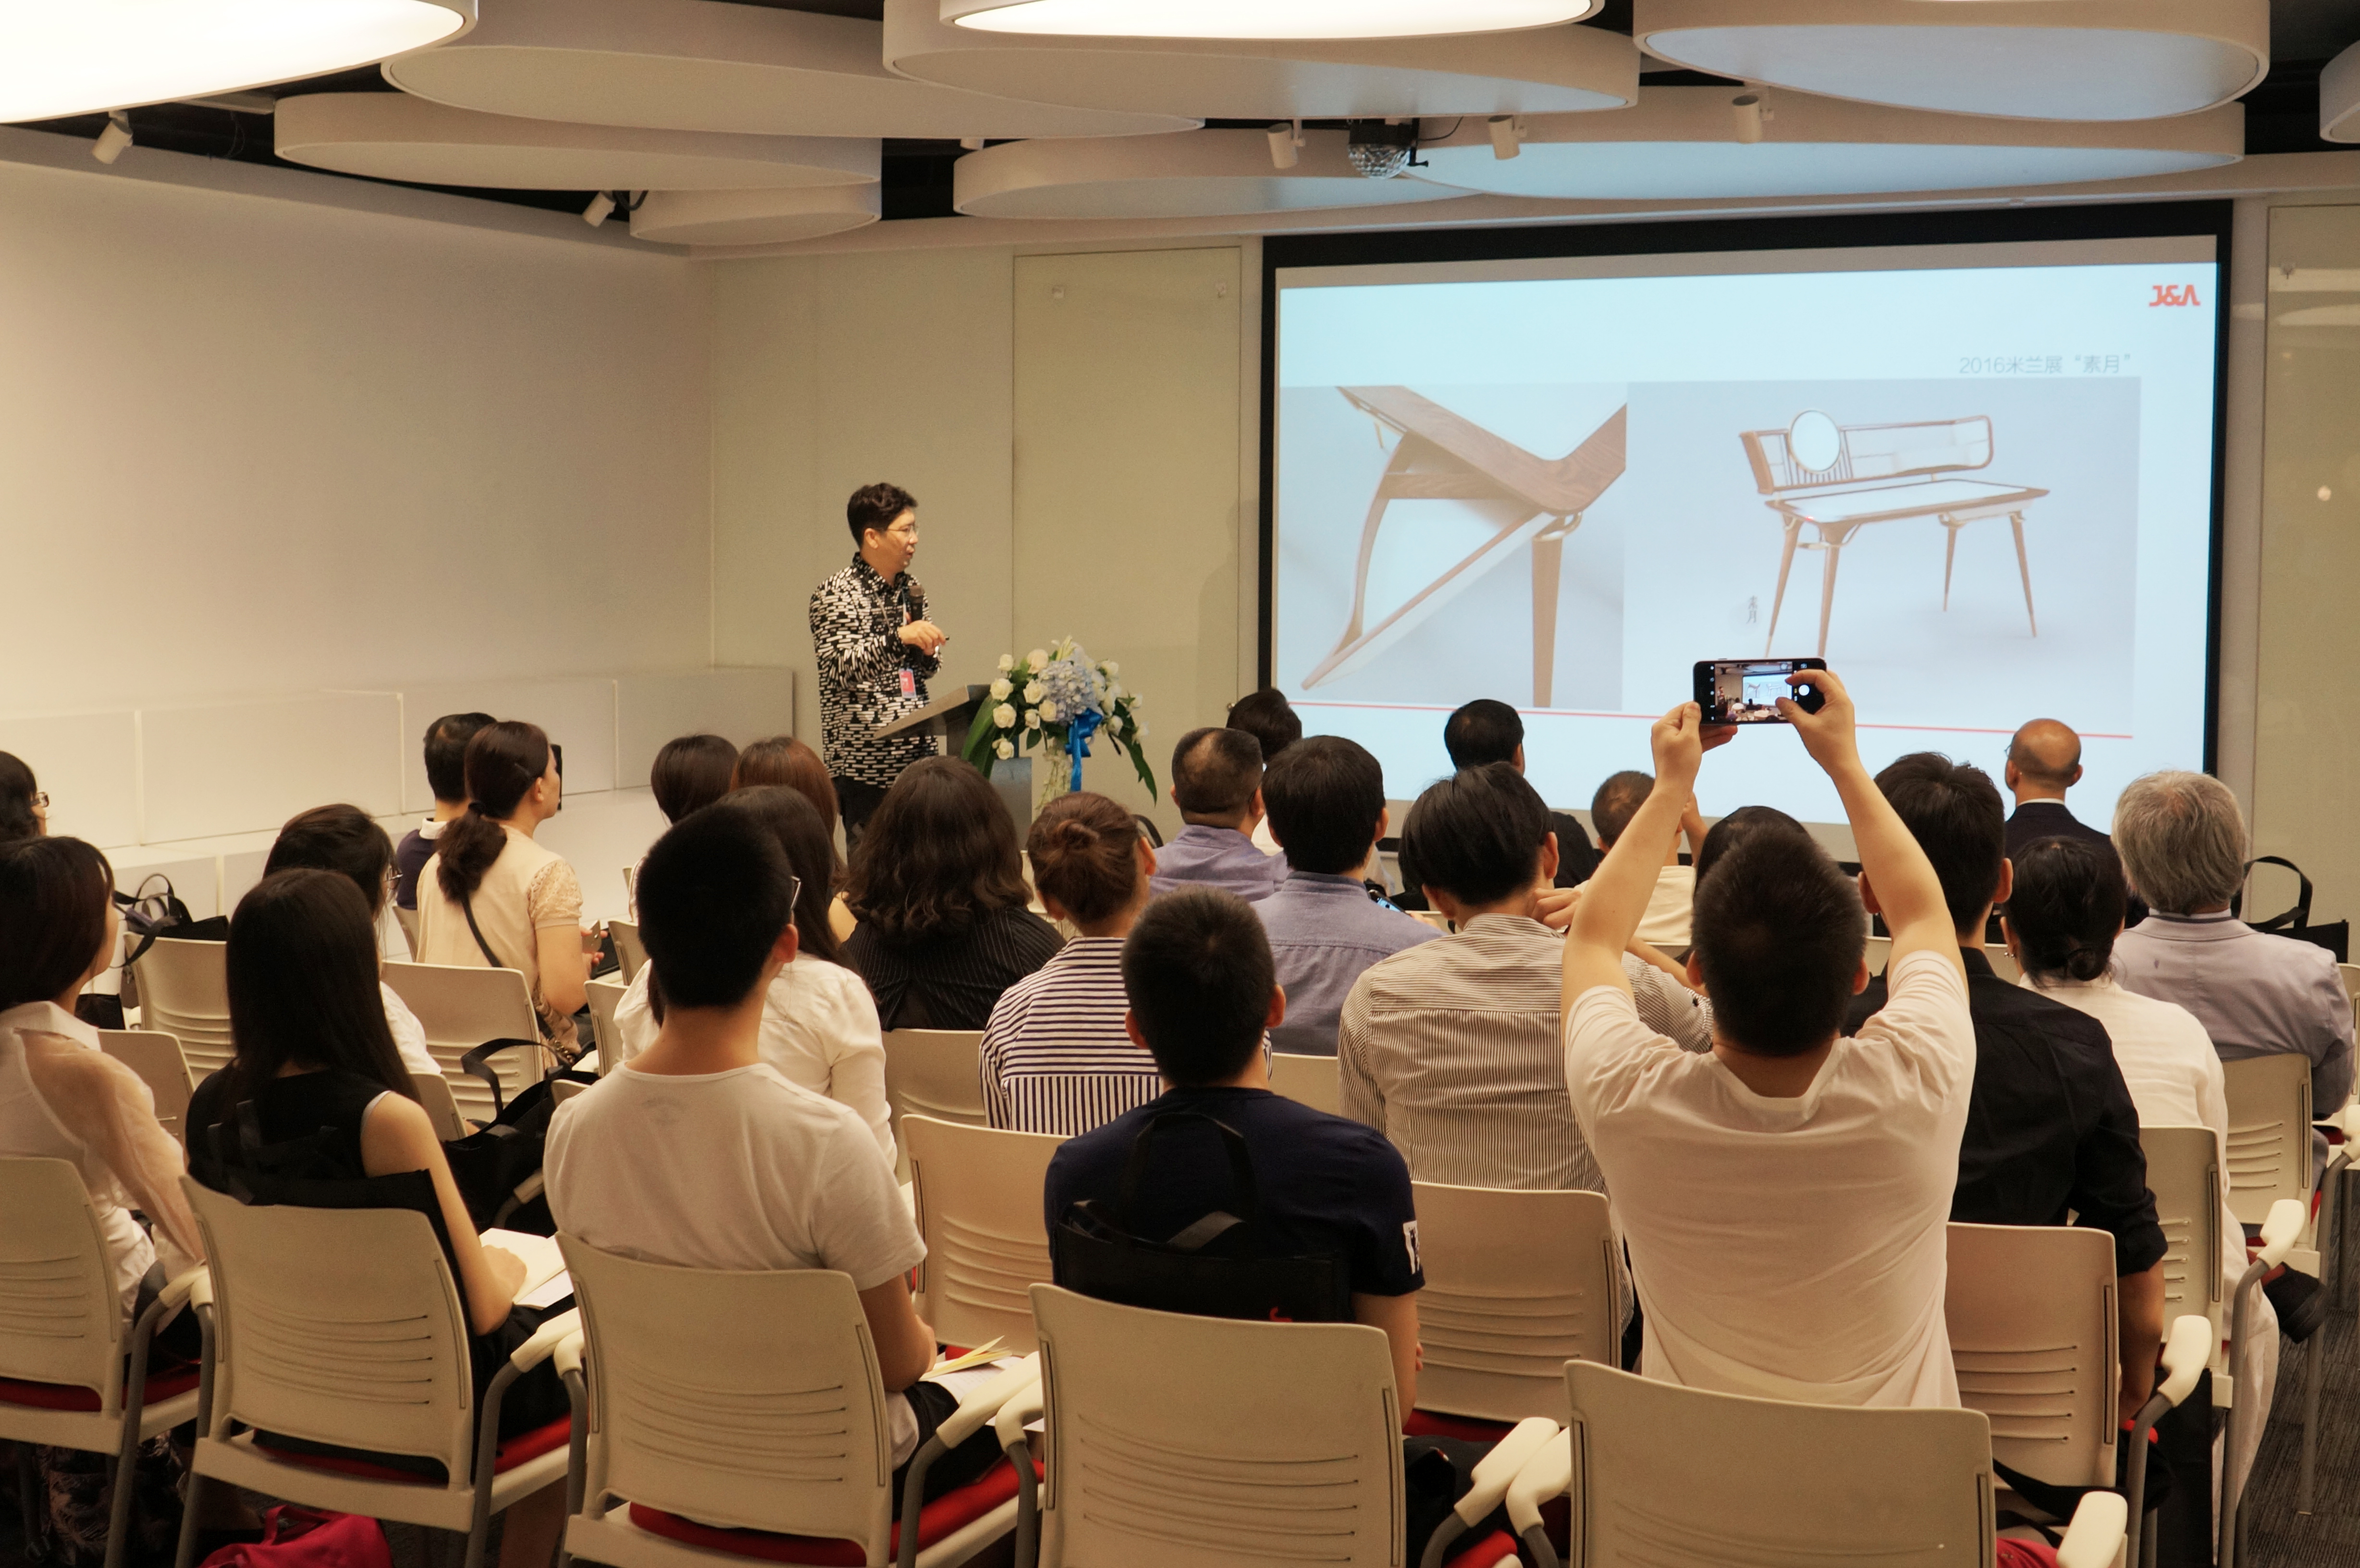 J&A杰恩设计董事长、总设计师姜峰先生做了题为“无界之界”的演讲